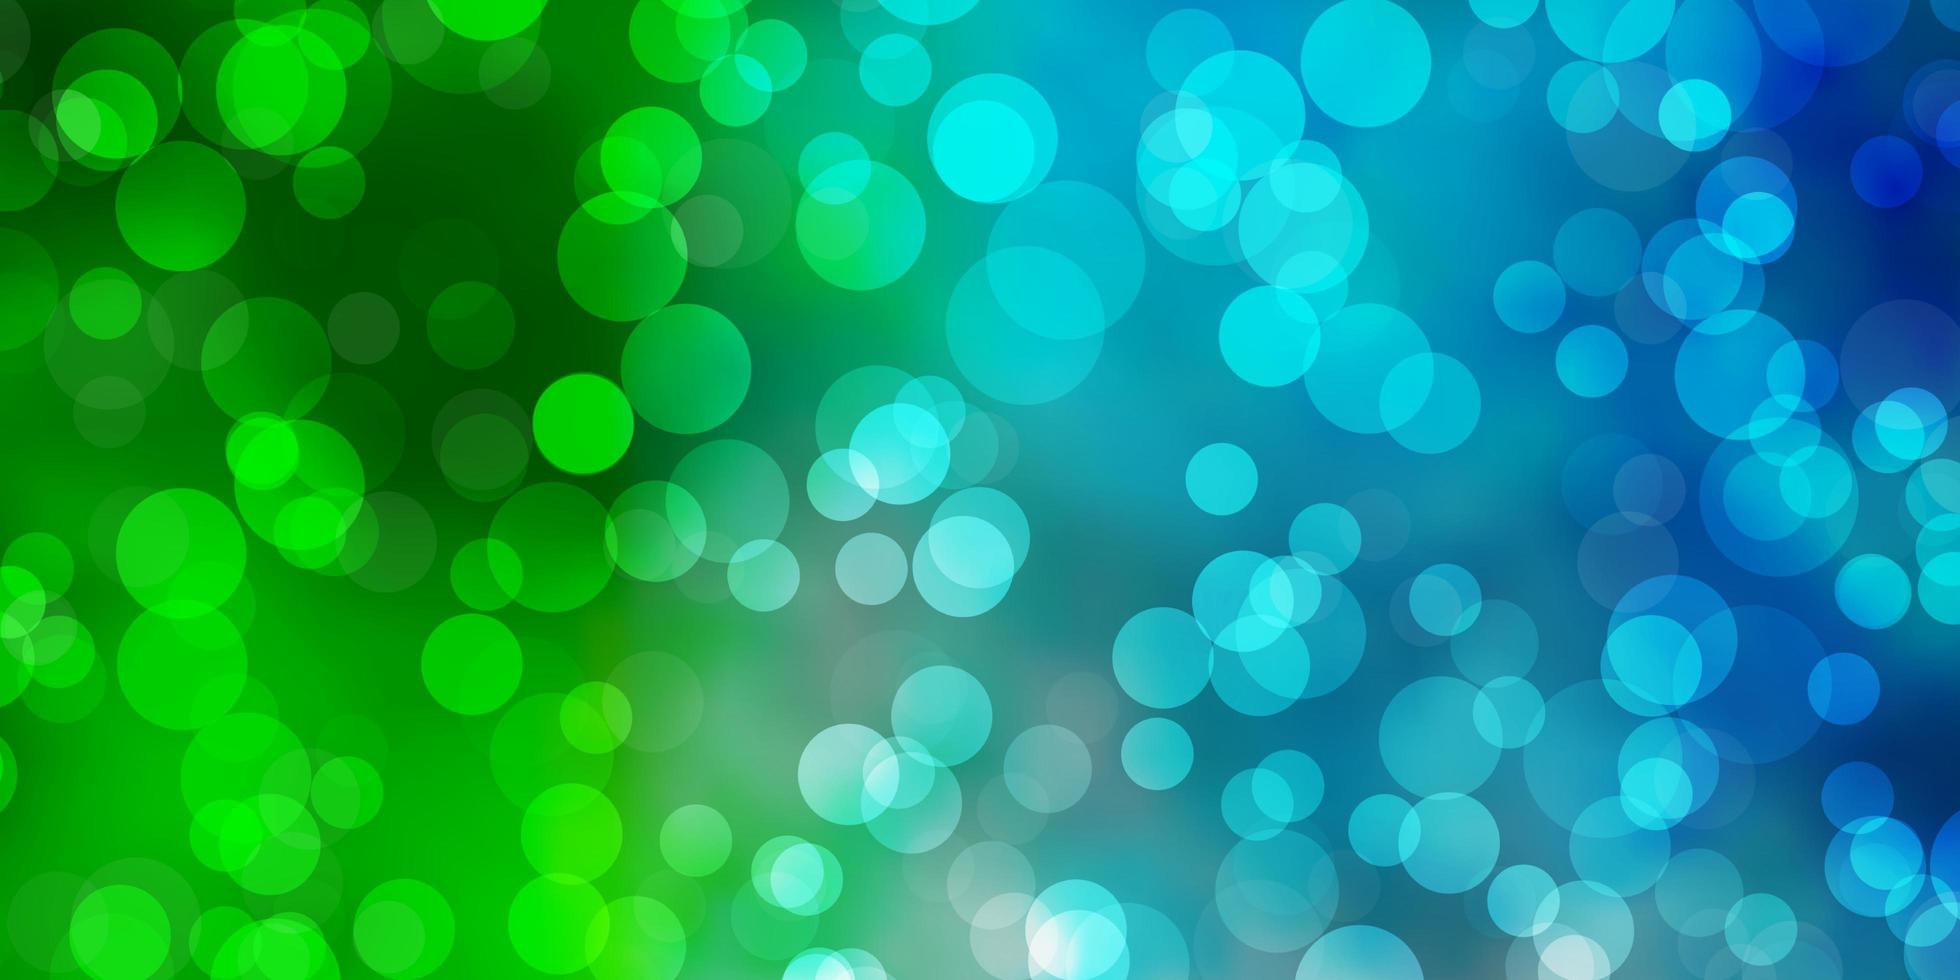 hellblaues, grünes Vektorlayout mit Kreisformen. abstraktes dekoratives Design im Farbverlaufsstil mit Blasen. neue Vorlage für ein Markenbuch. vektor